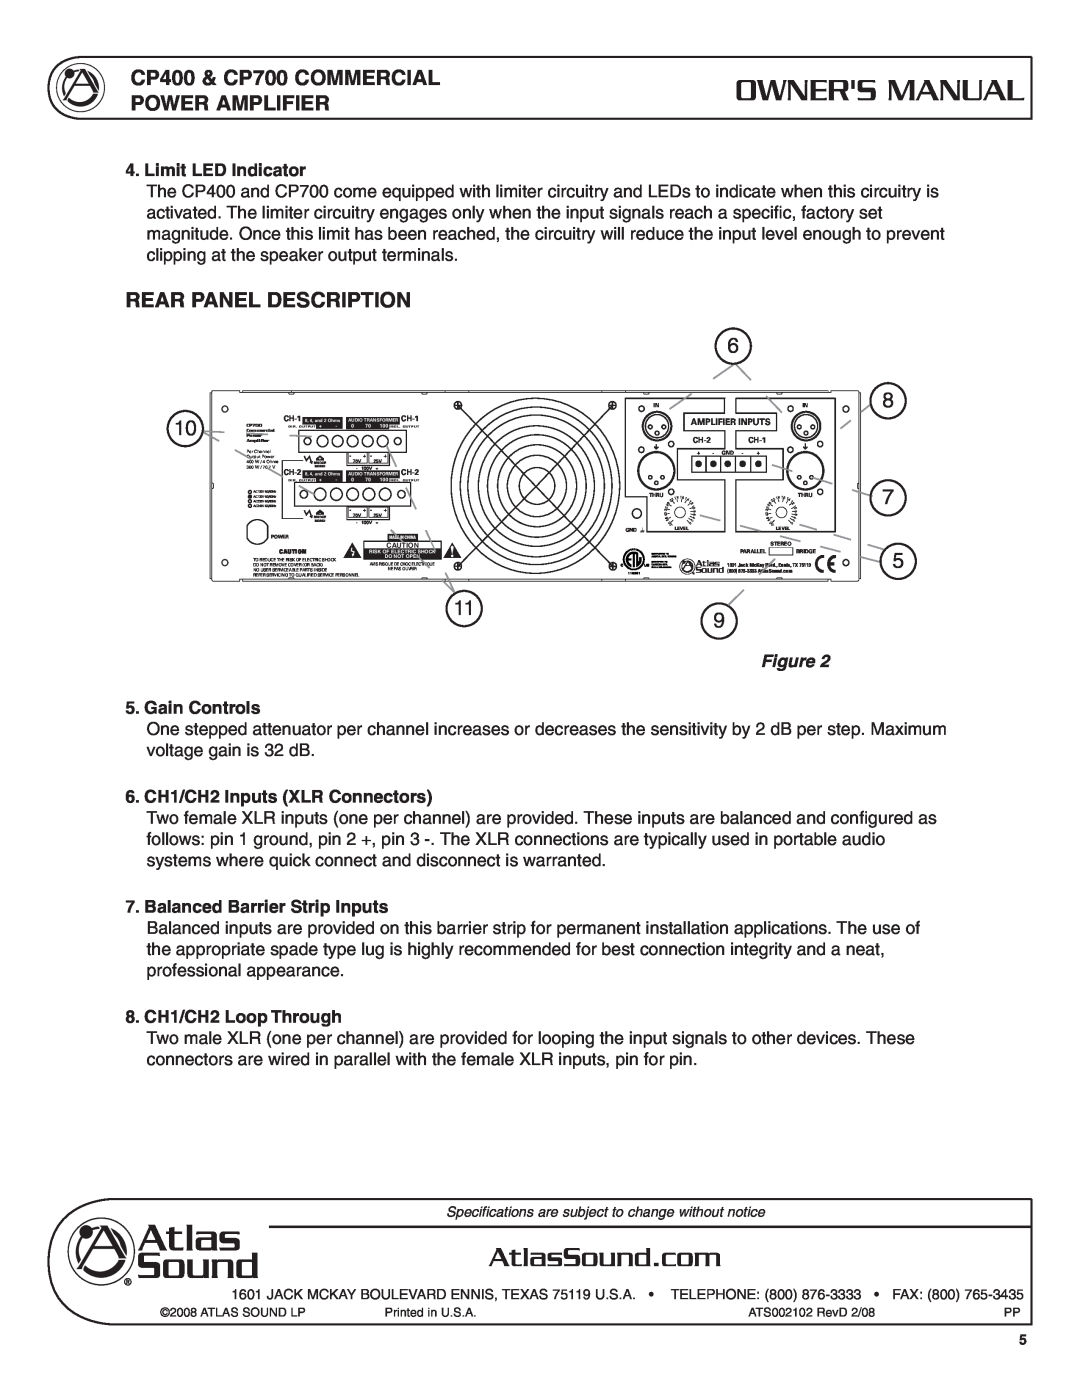 Atlas Sound CP400 rear Panel Description, Limit LED Indicator, Gain Controls, 6. CH1/CH2 Inputs XLR Connectors, Telephone 